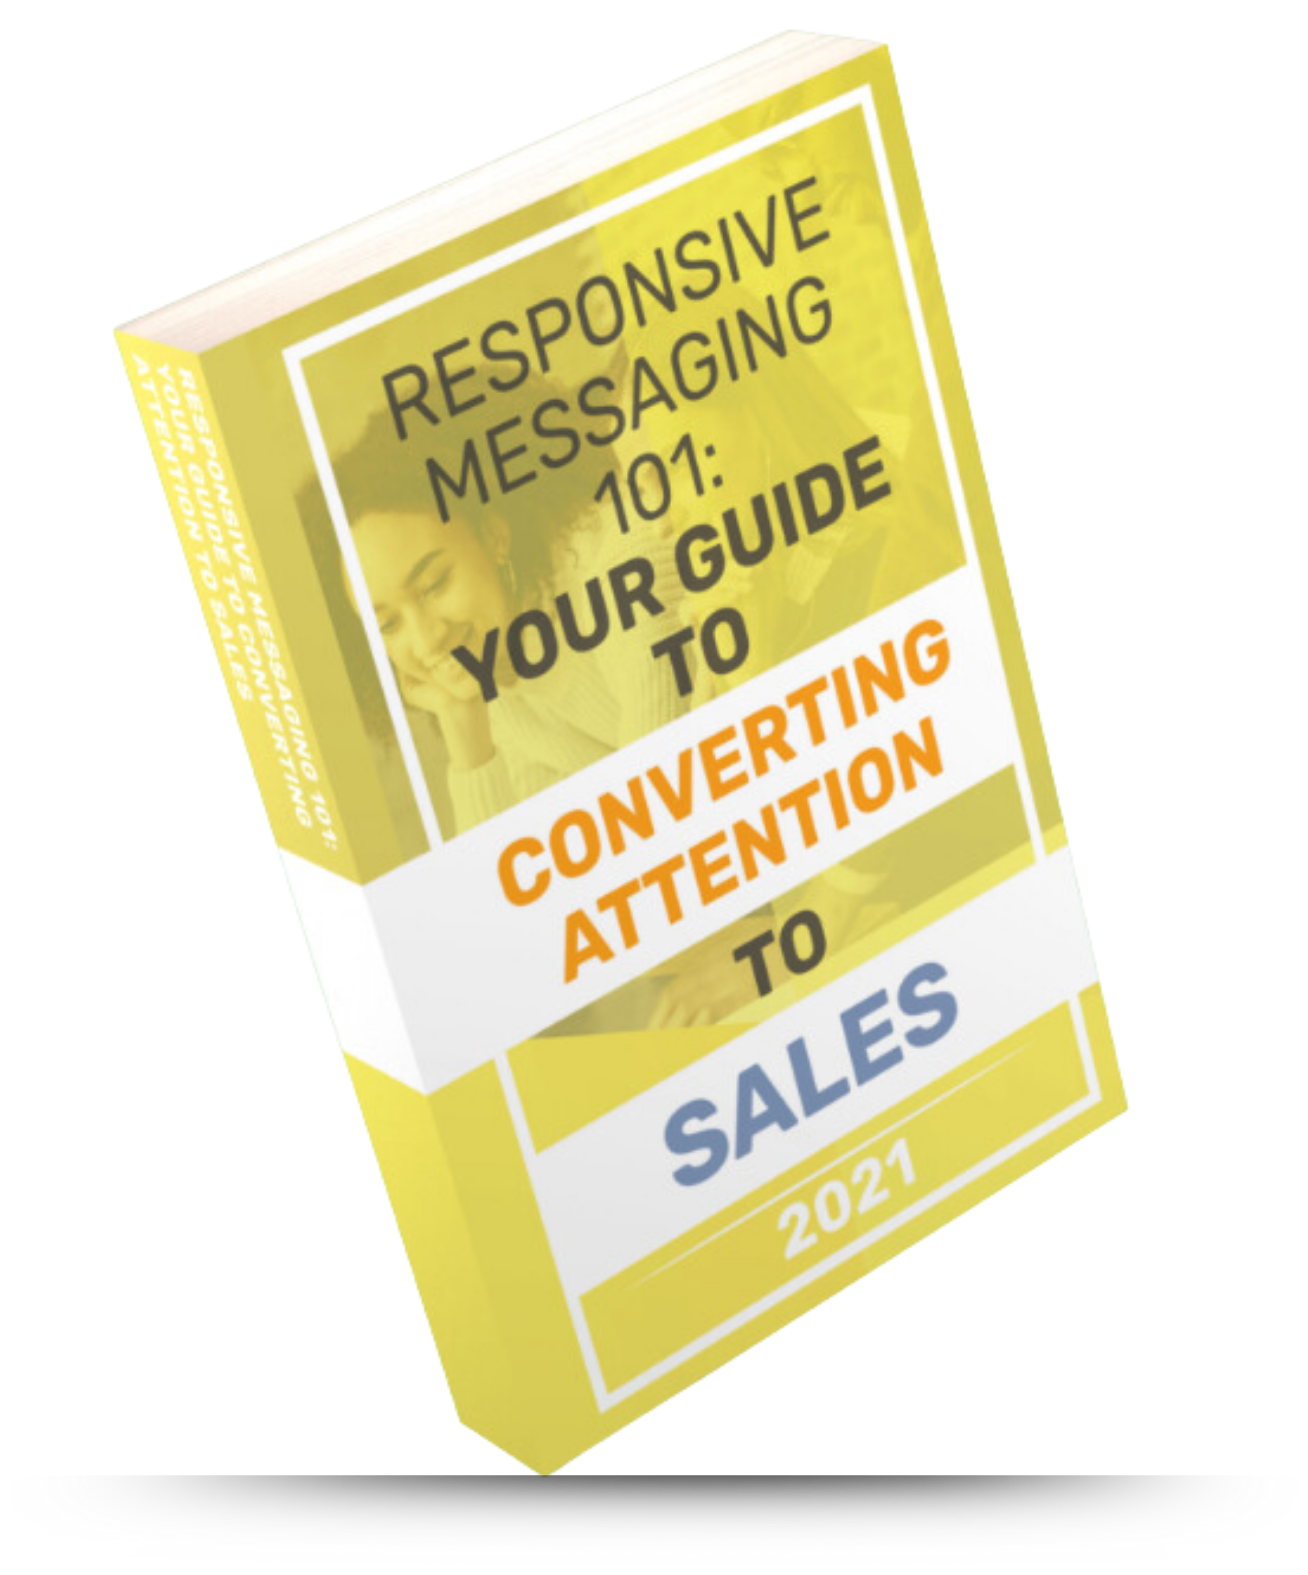 Responsive Messaging 101 SW Original Handbook